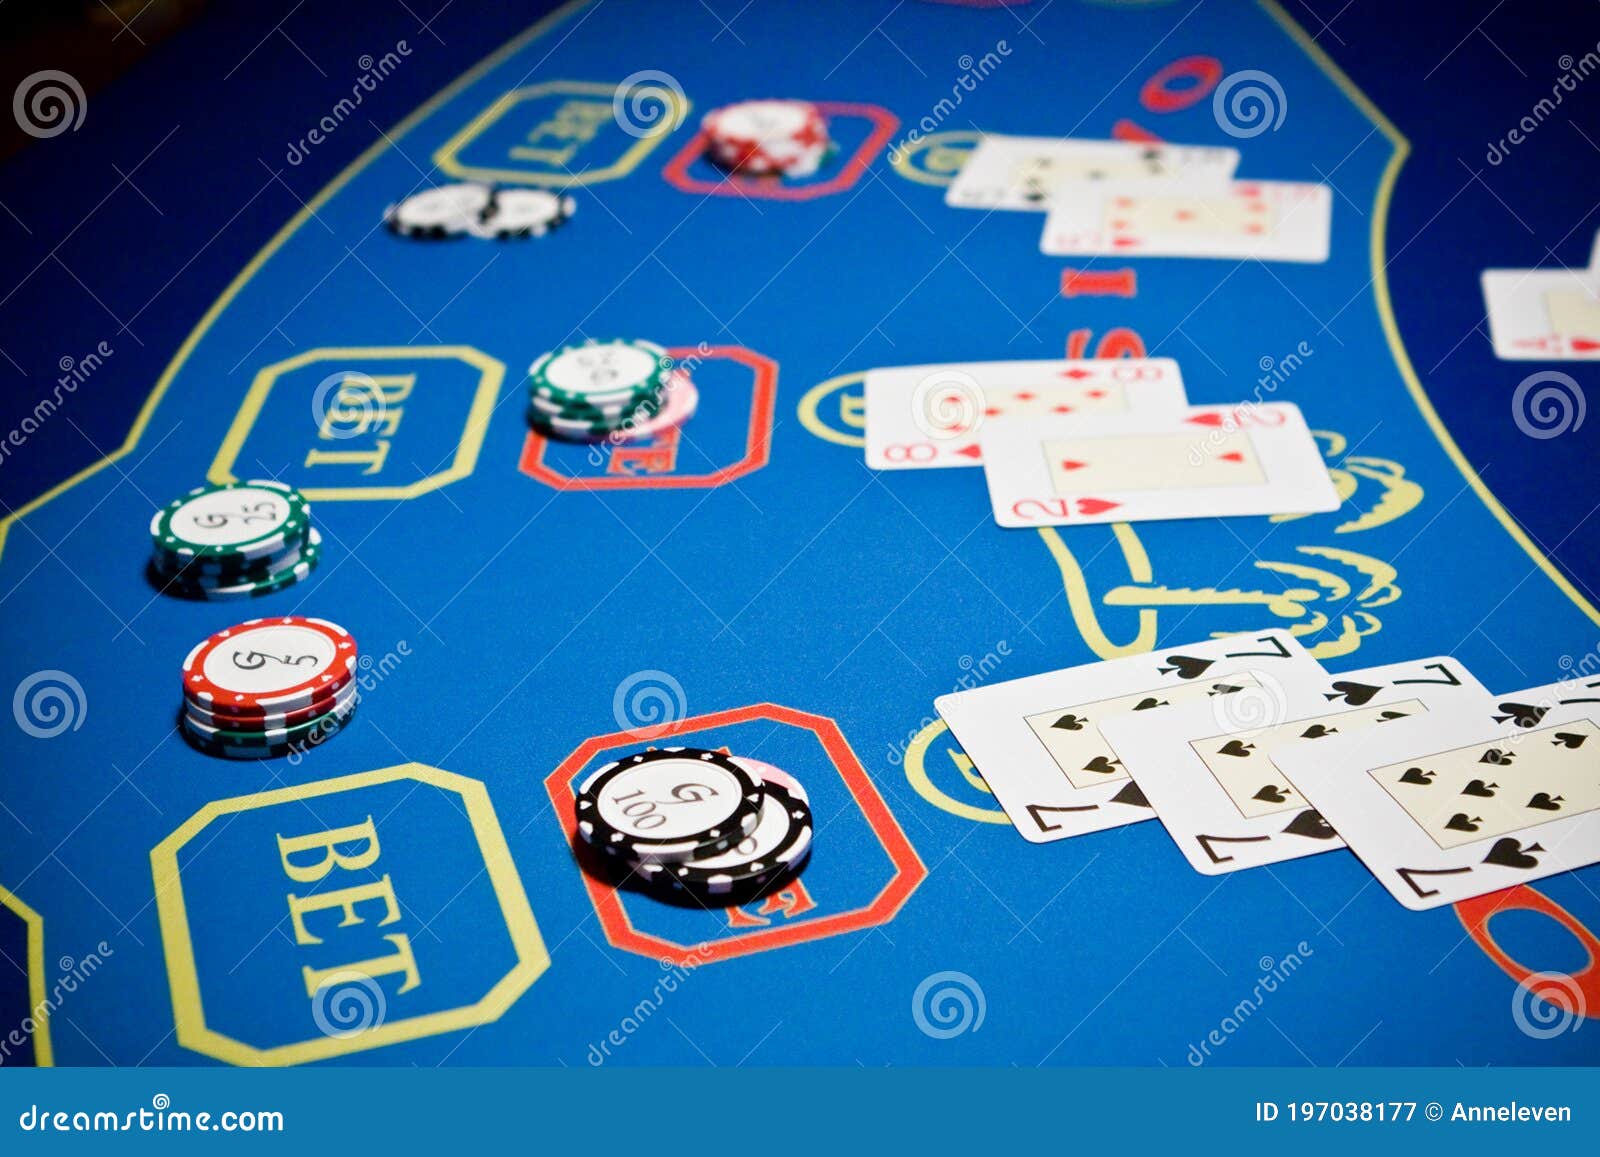 Como Se Juega Casino Correctamente Con Las Cartas - YouTube